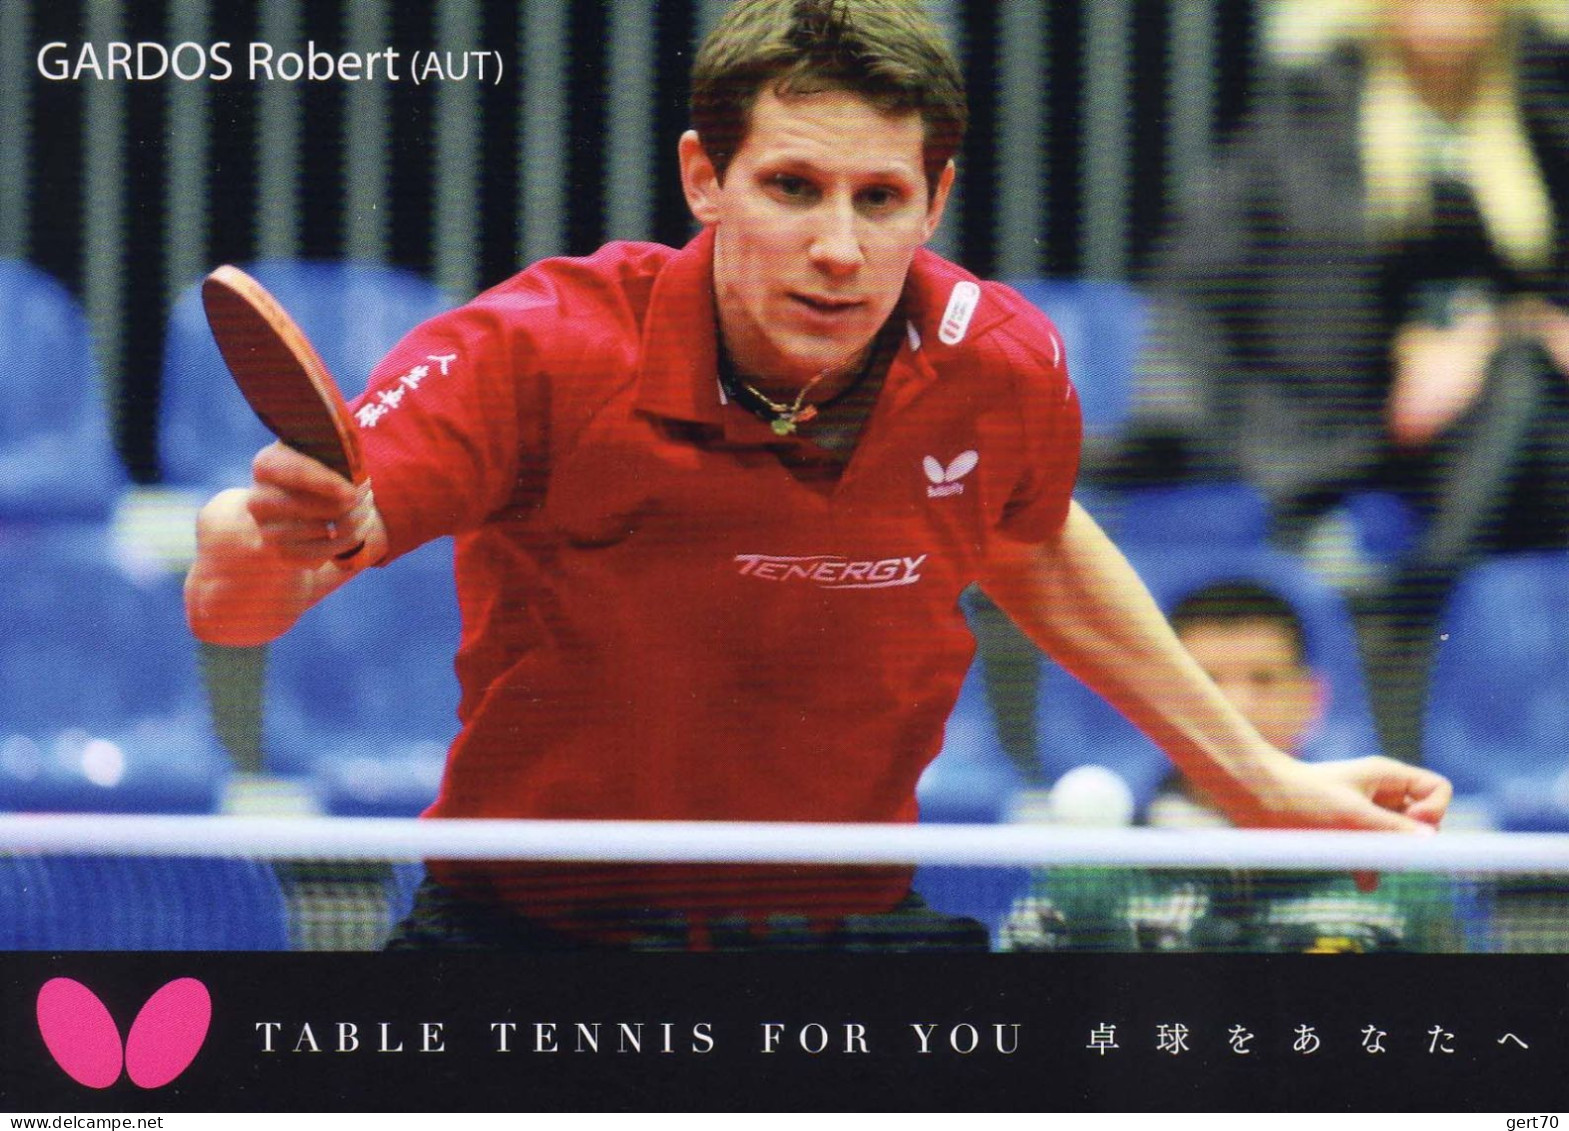 Austria / Autriche 2014, Robert Gardos - Table Tennis